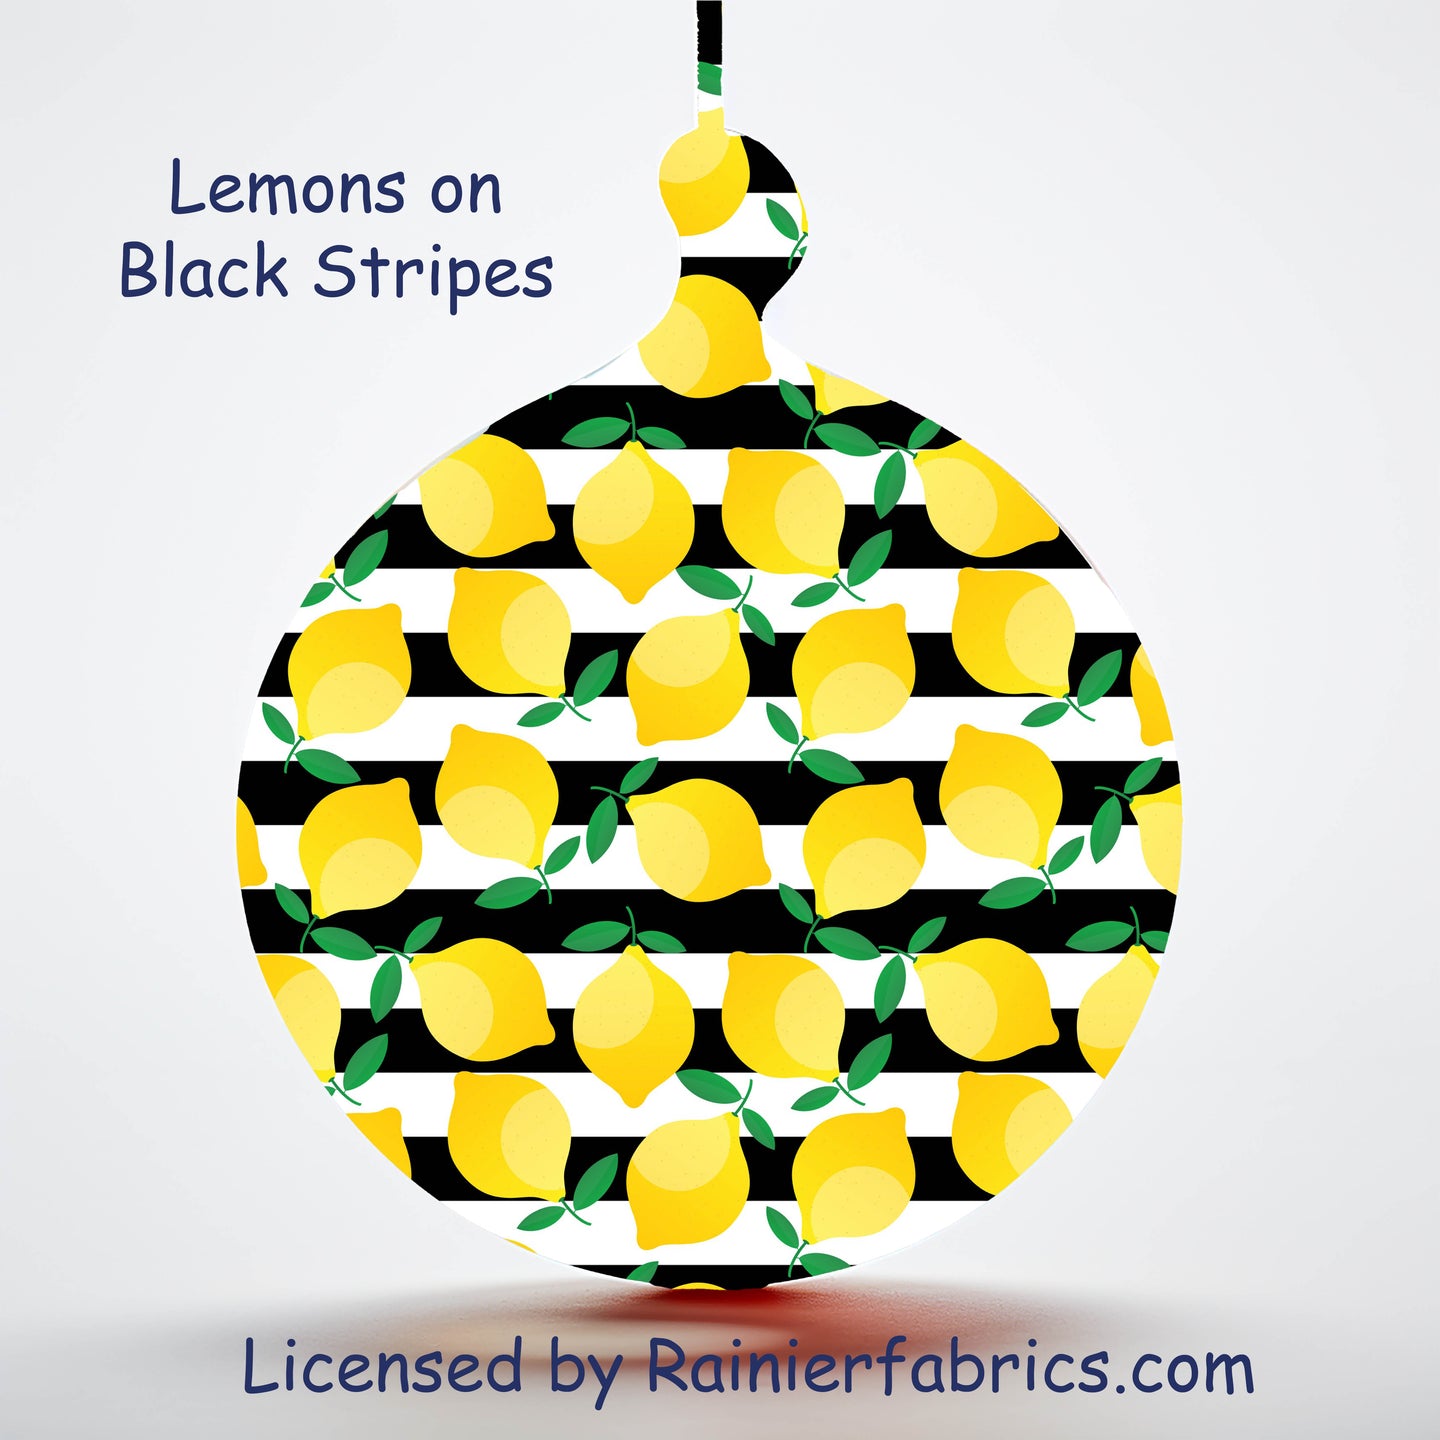 Lemons on Black Stripes